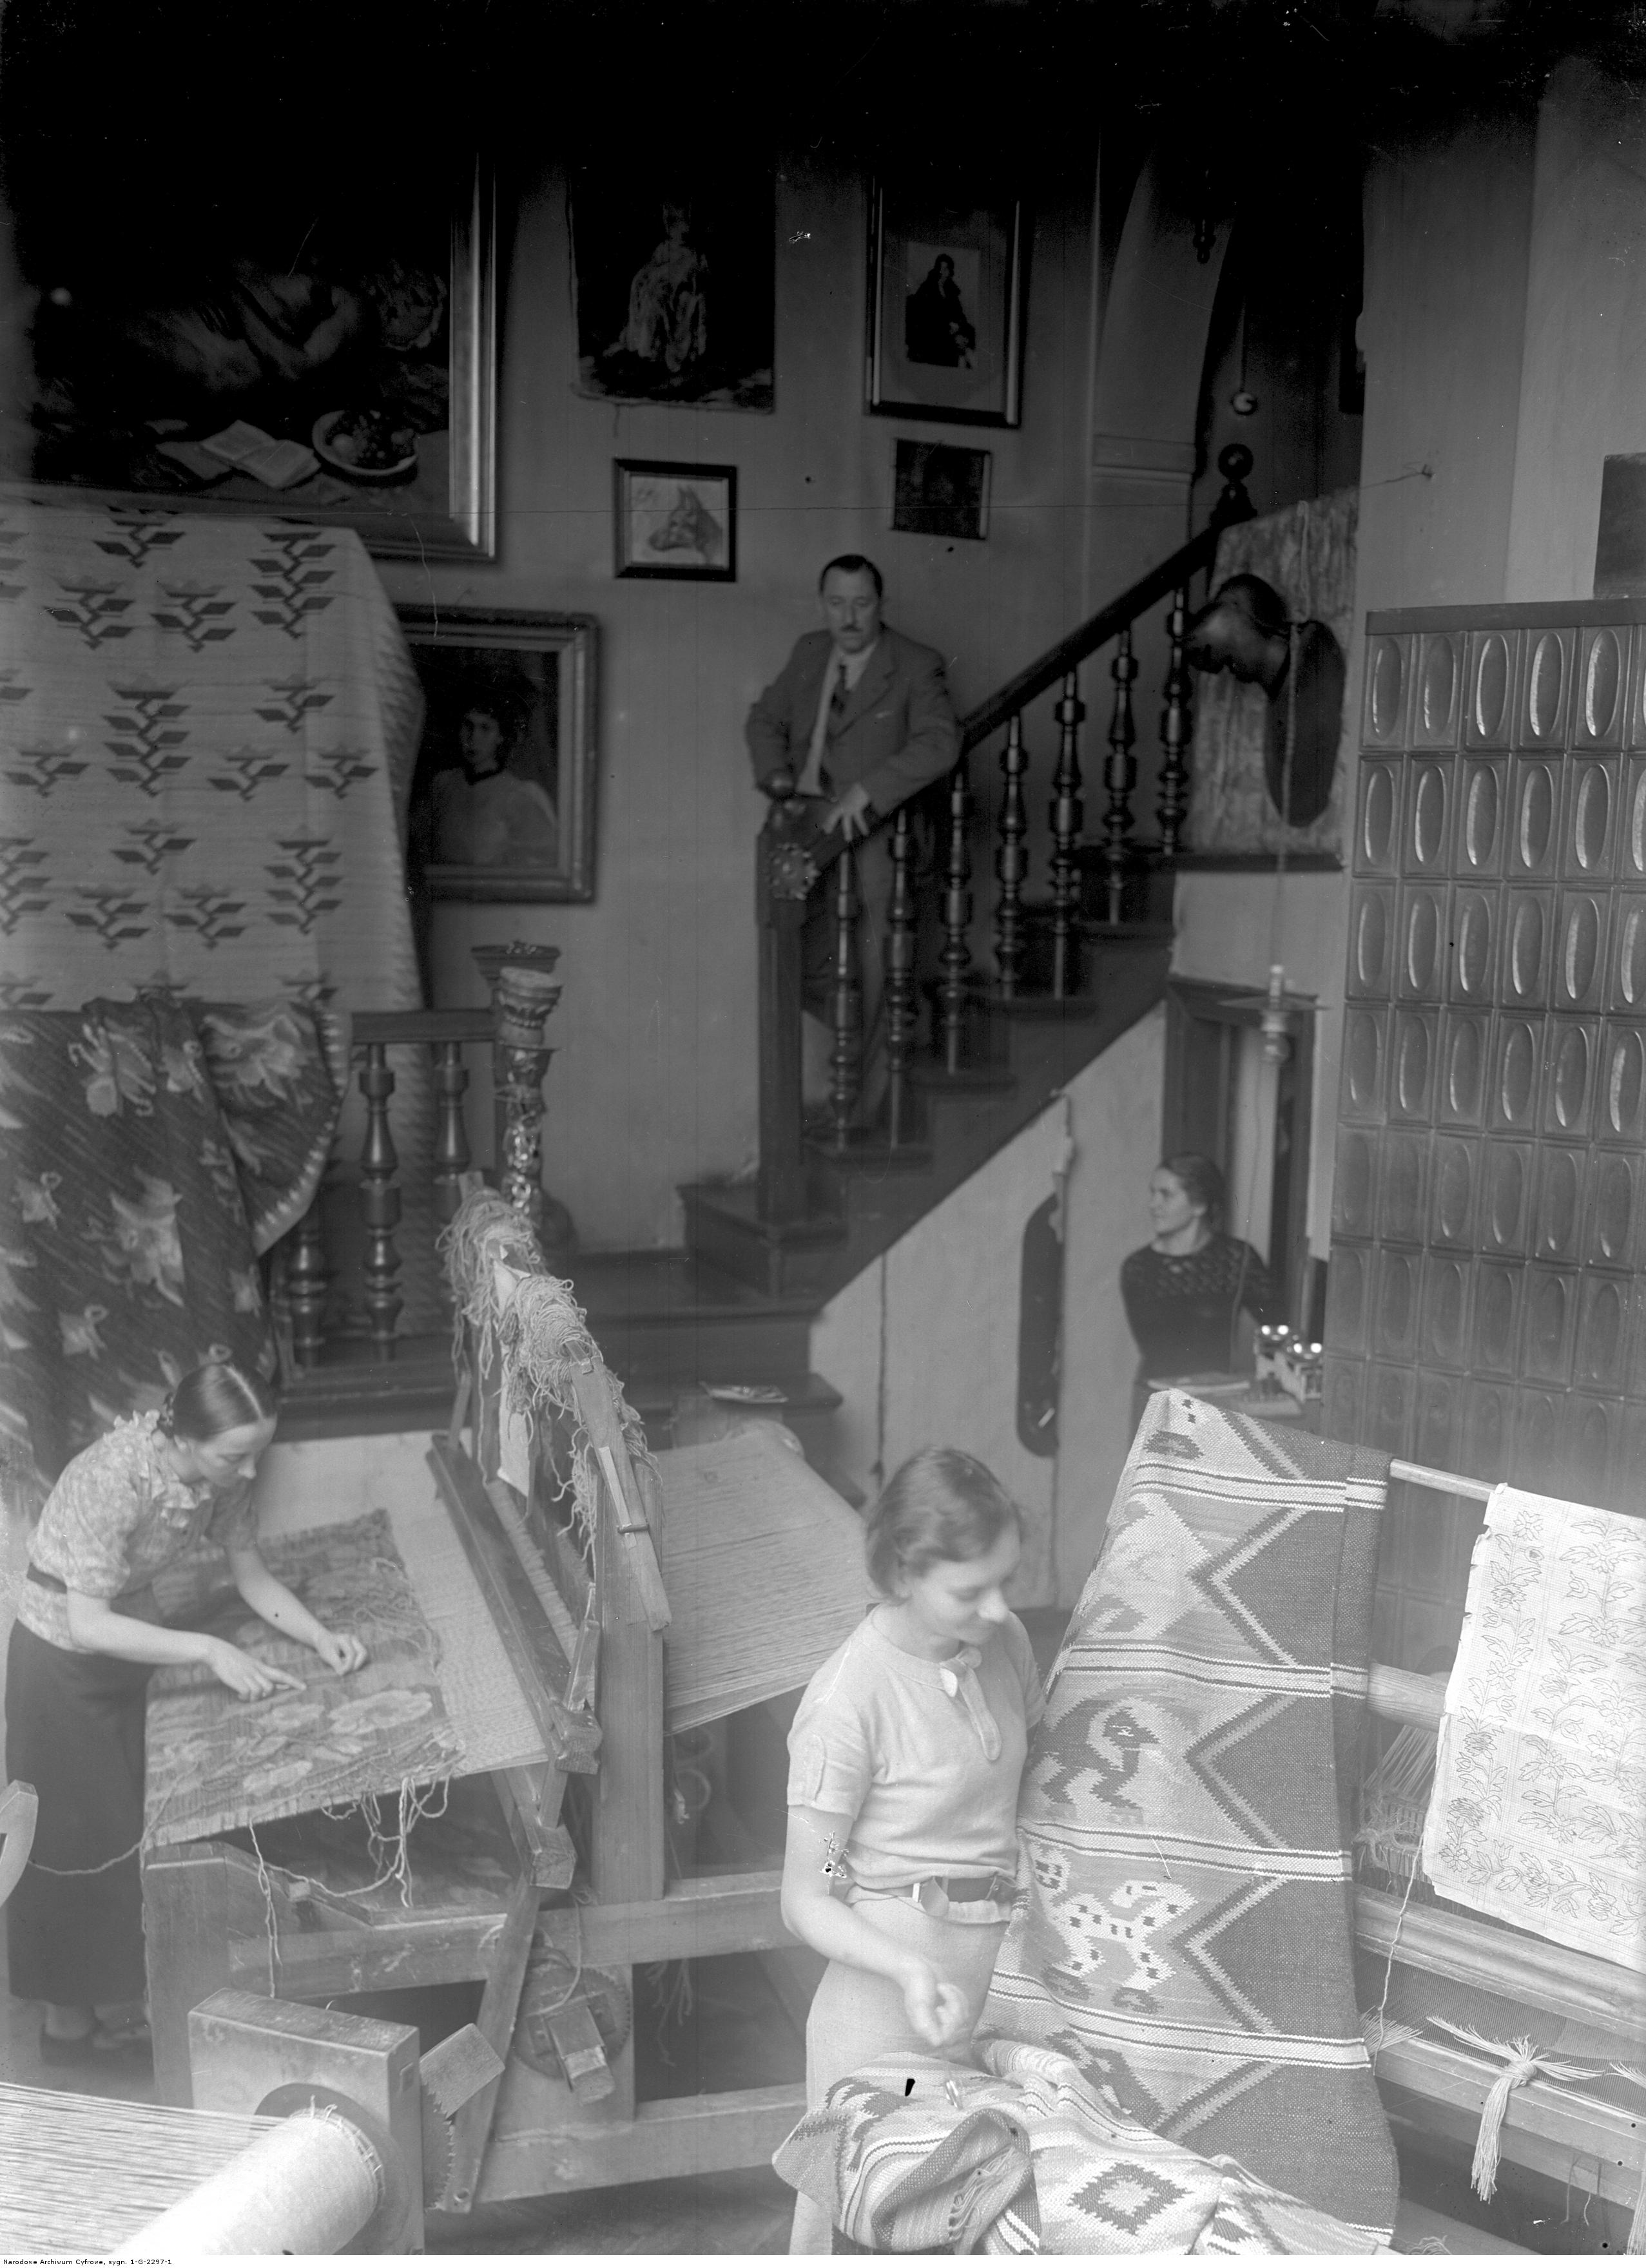 Pracownia przy Starowiślnej 10 w czasach funkcjonowania pracowni kilimiarskiej Teodora Grotta, 1937 rok, źródło: Narodowe Archiwum Cyfrowe